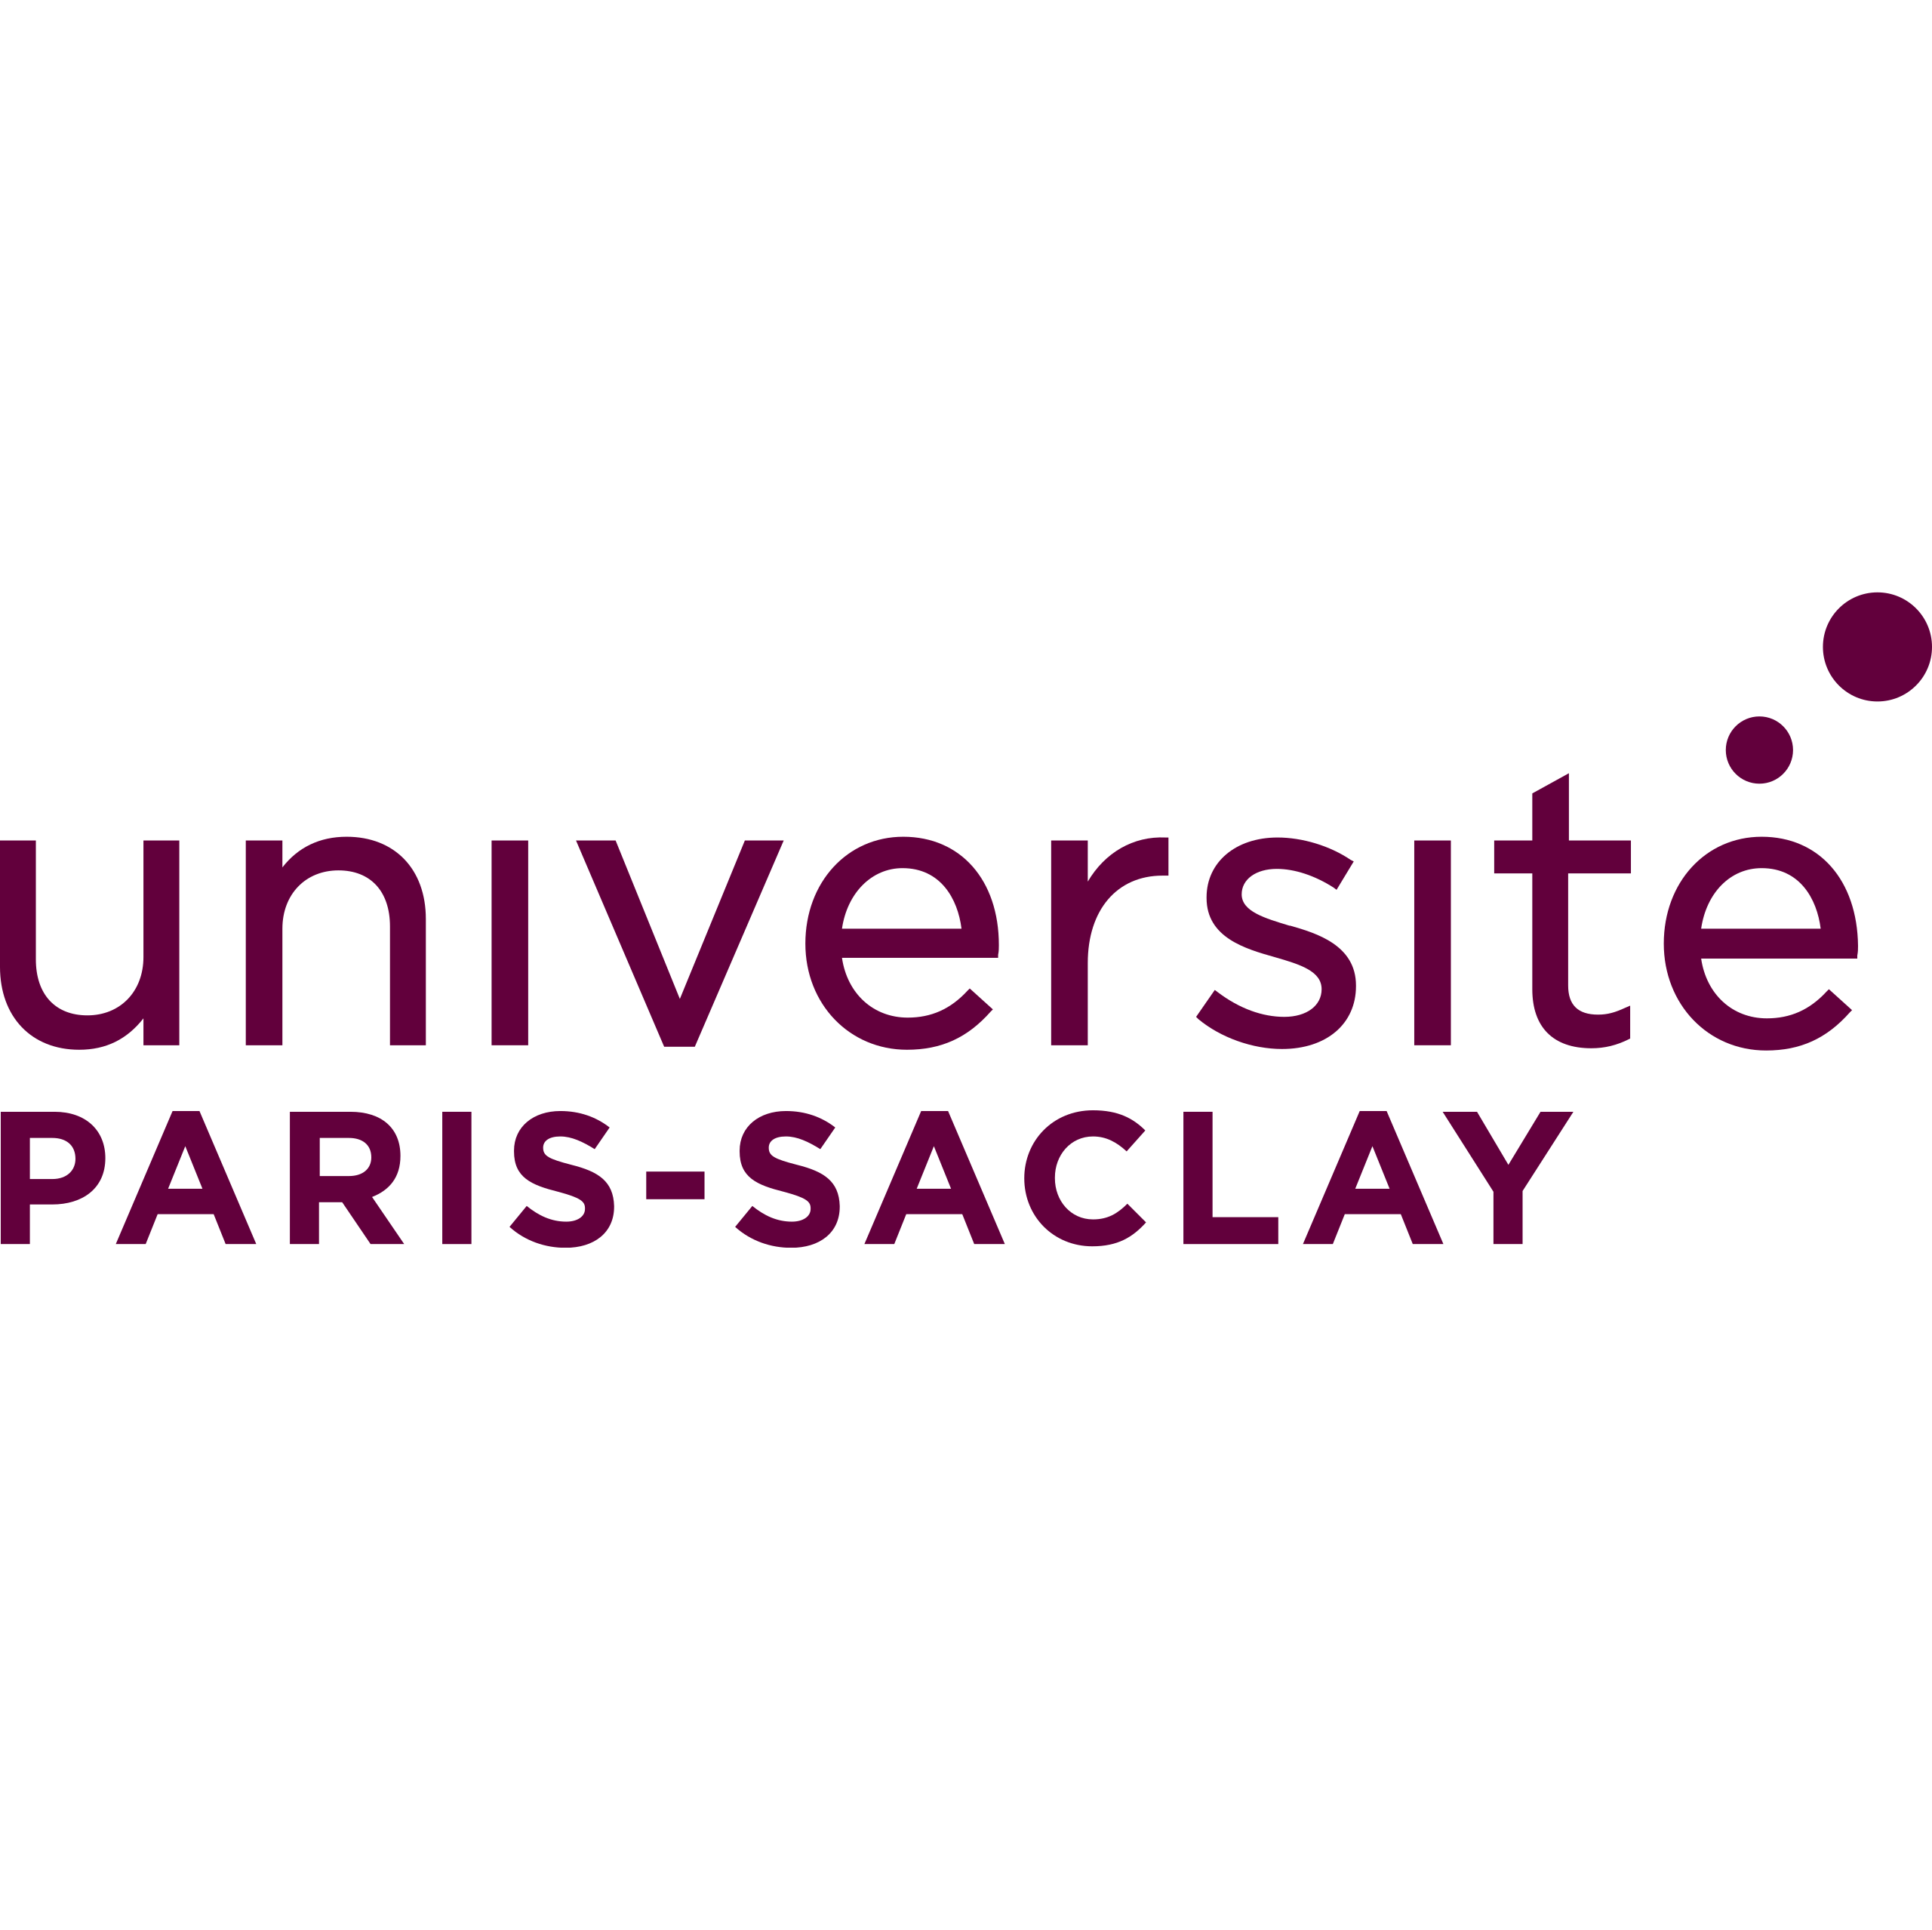 University Paris Saclay